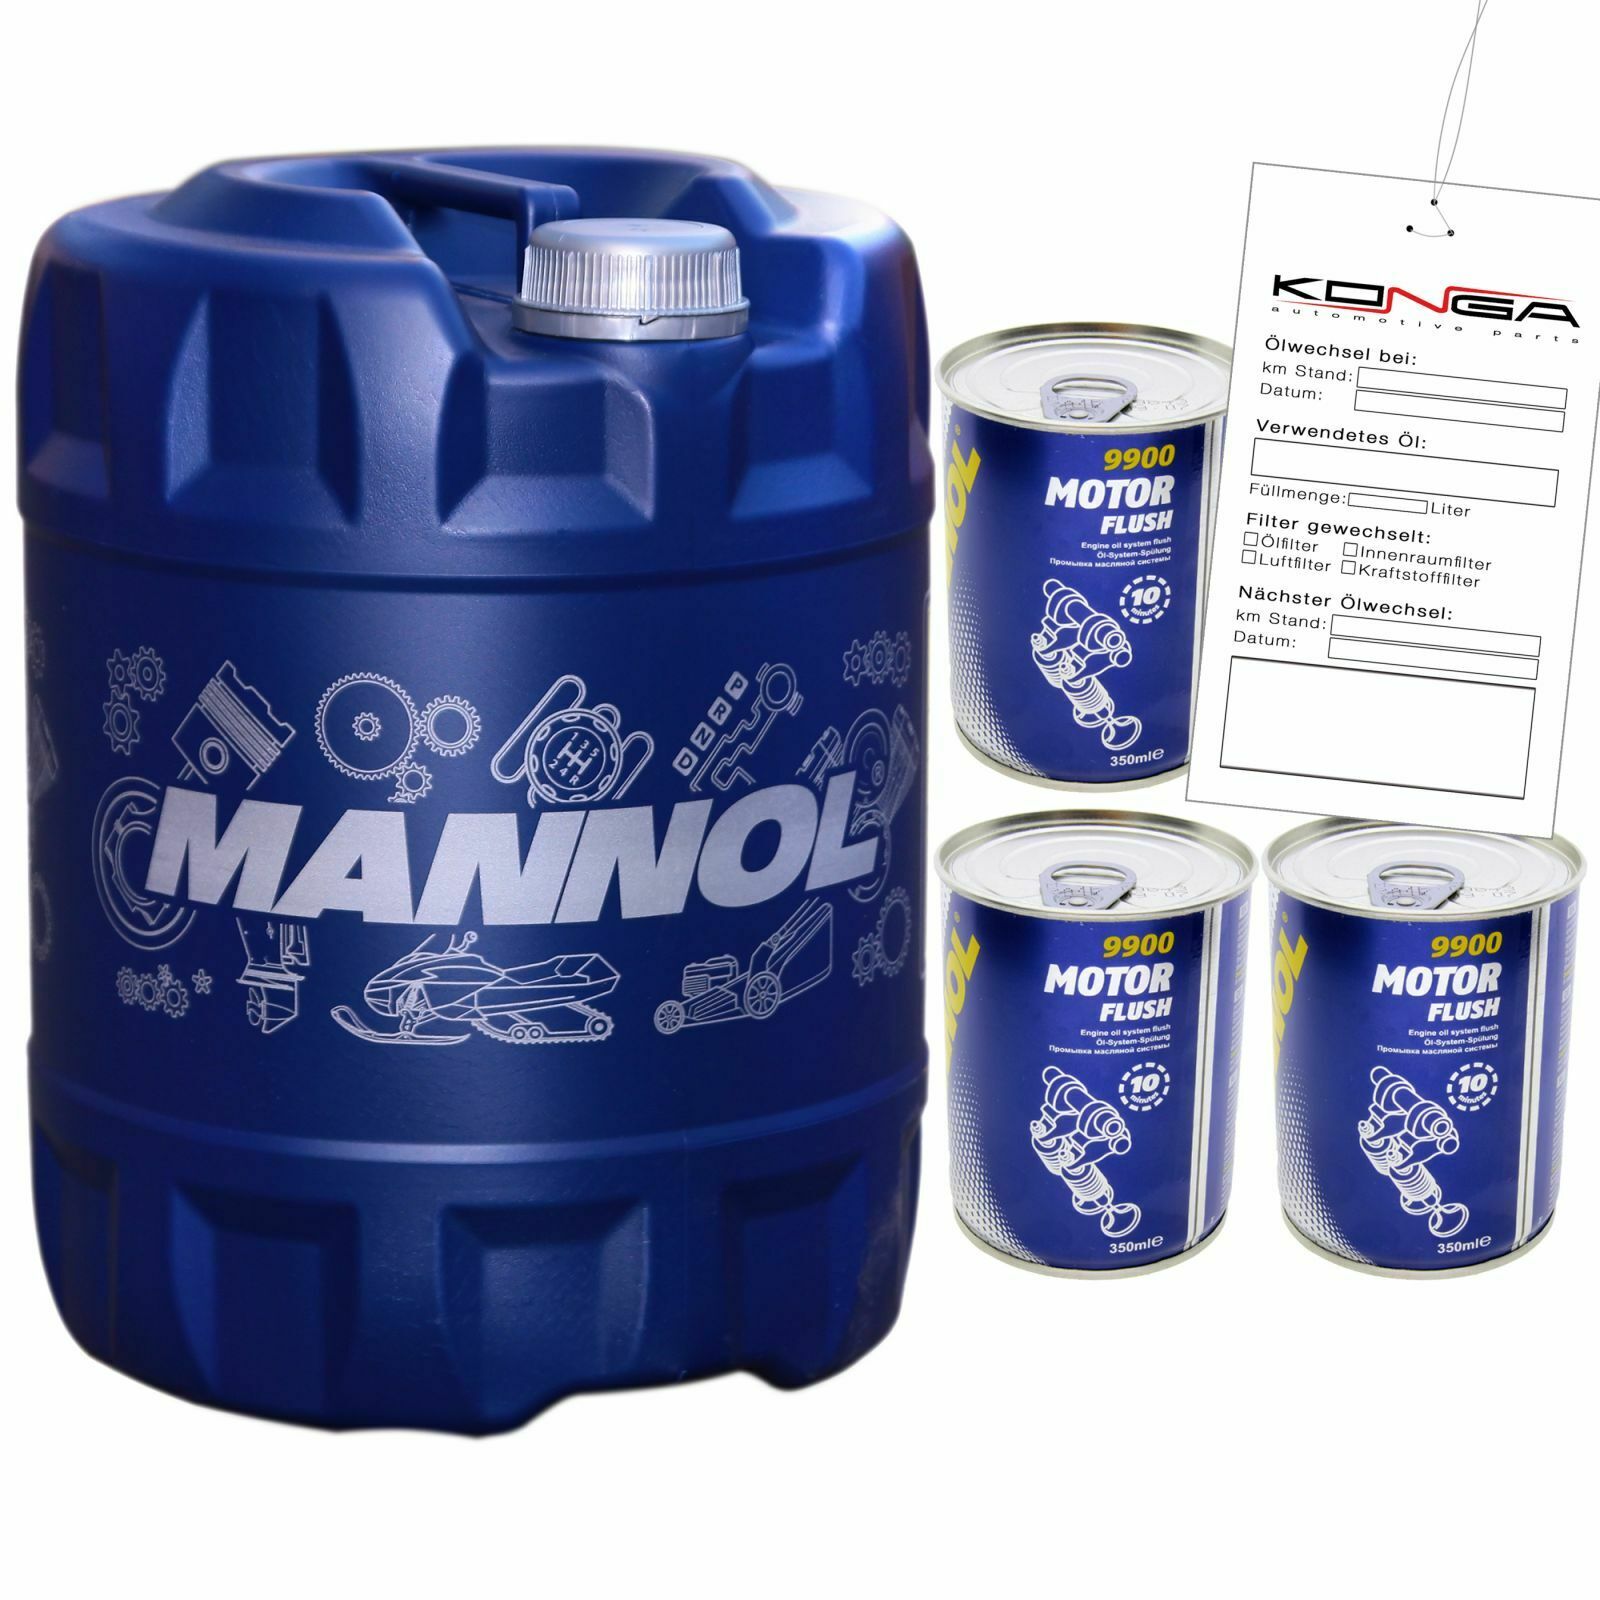 20 L MANNOL 7501 Classic 10W-40 Motoröl ACEA A3/B4 MB 229.1 + 4x Motorflush 9900